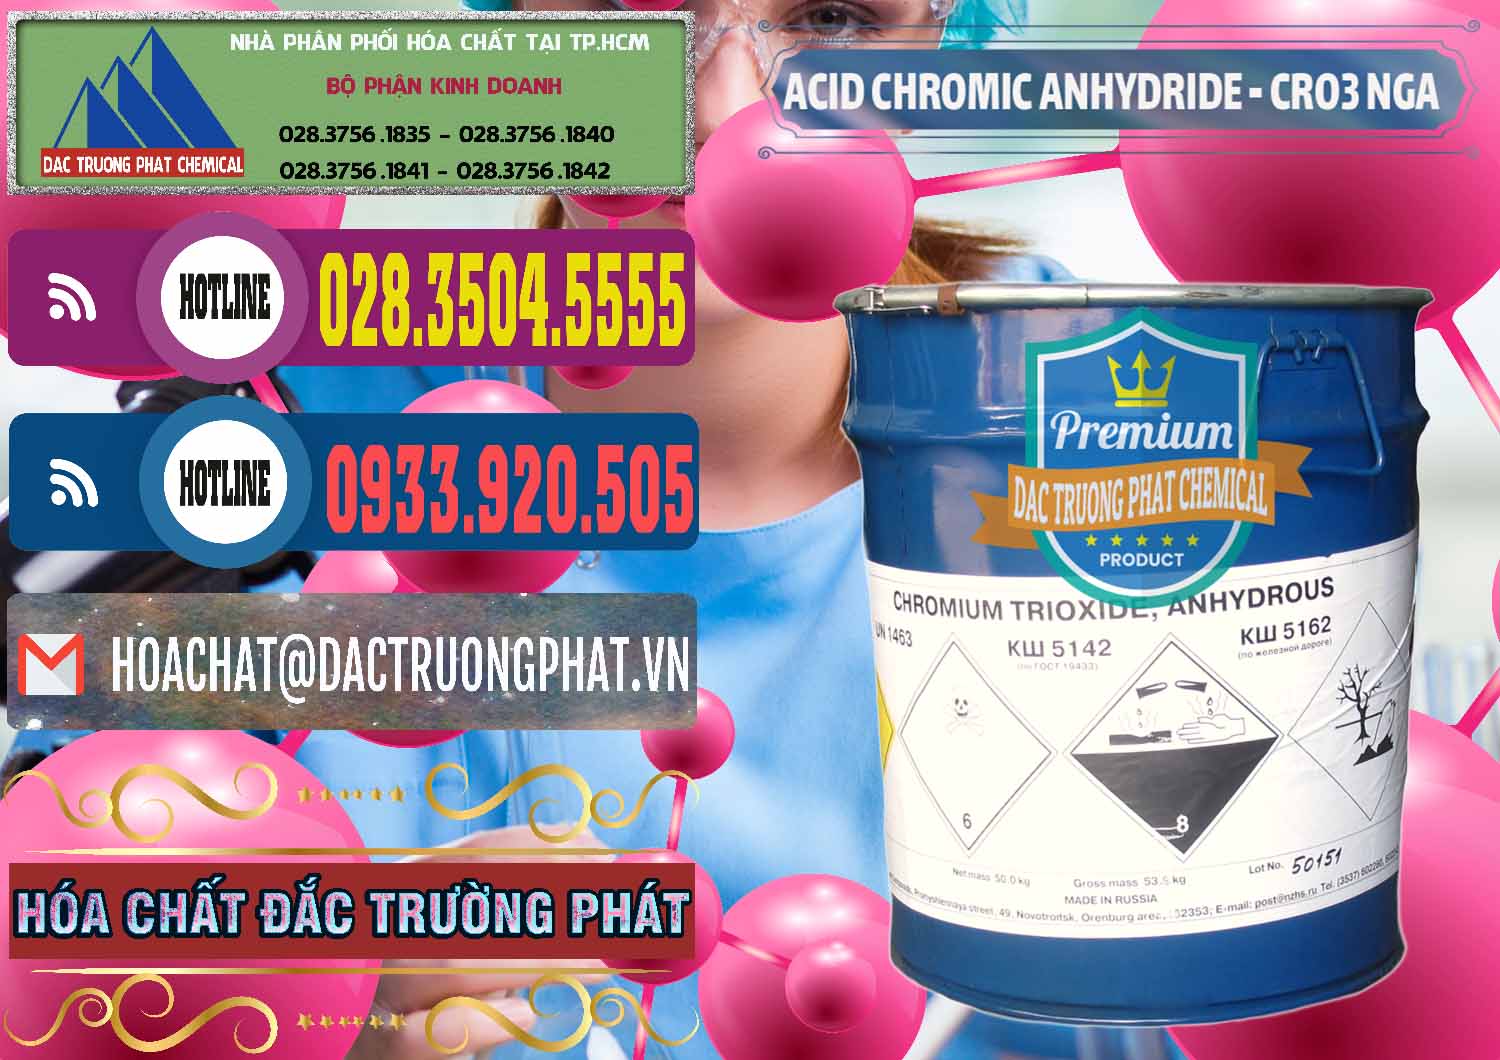 Cty bán và cung cấp Acid Chromic Anhydride - Cromic CRO3 Nga Russia - 0006 - Nhập khẩu và cung cấp hóa chất tại TP.HCM - muabanhoachat.com.vn